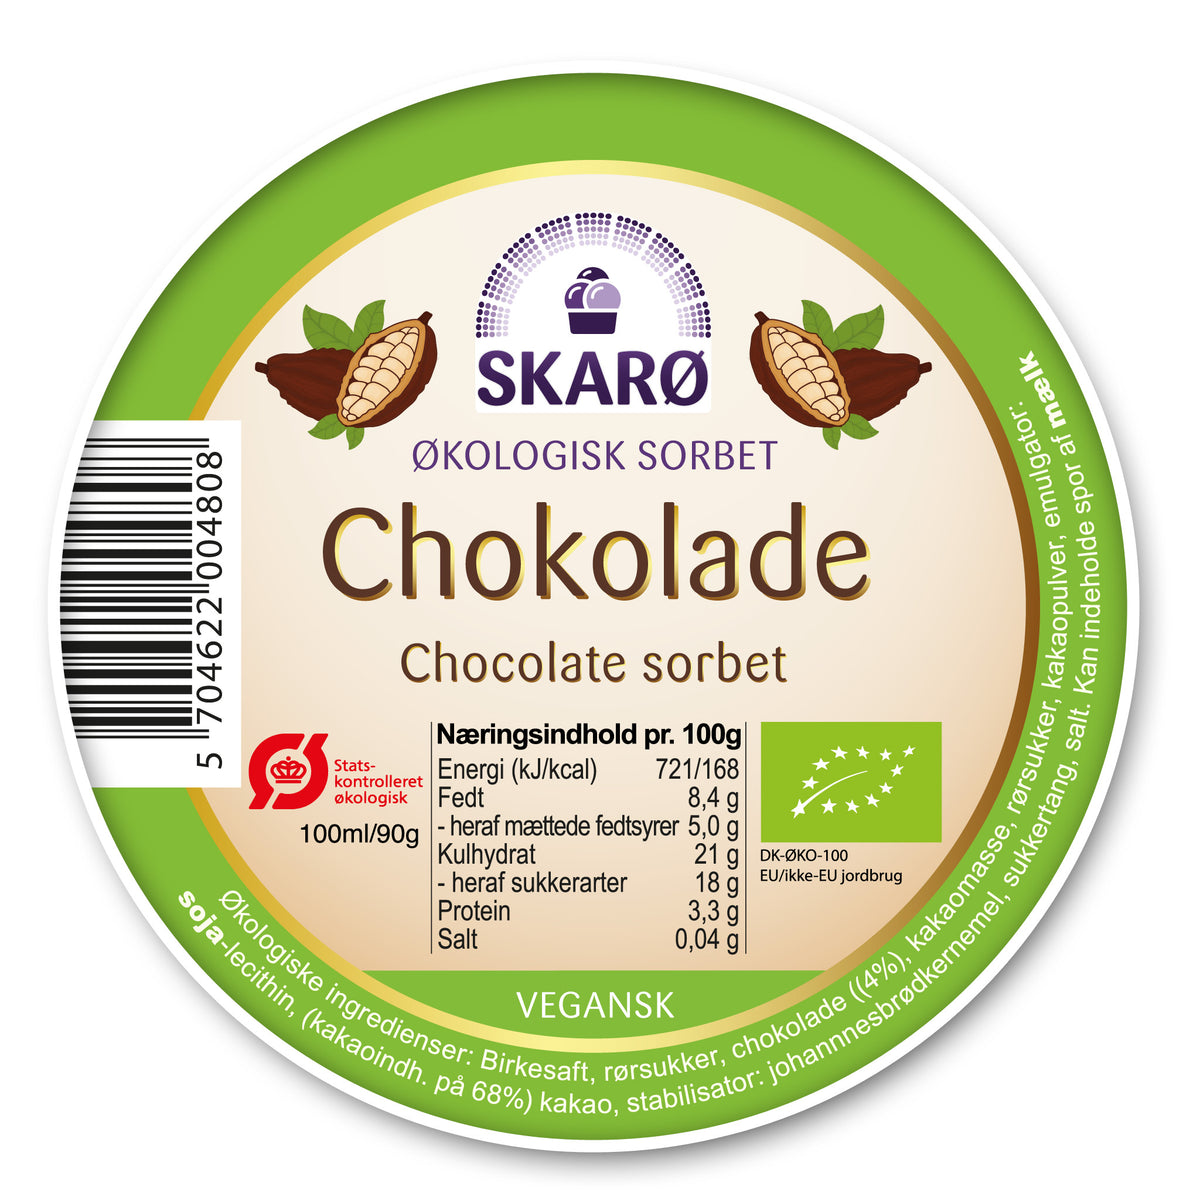 Økologisk vegansk sorbet med Chokolade - is fra Skarø